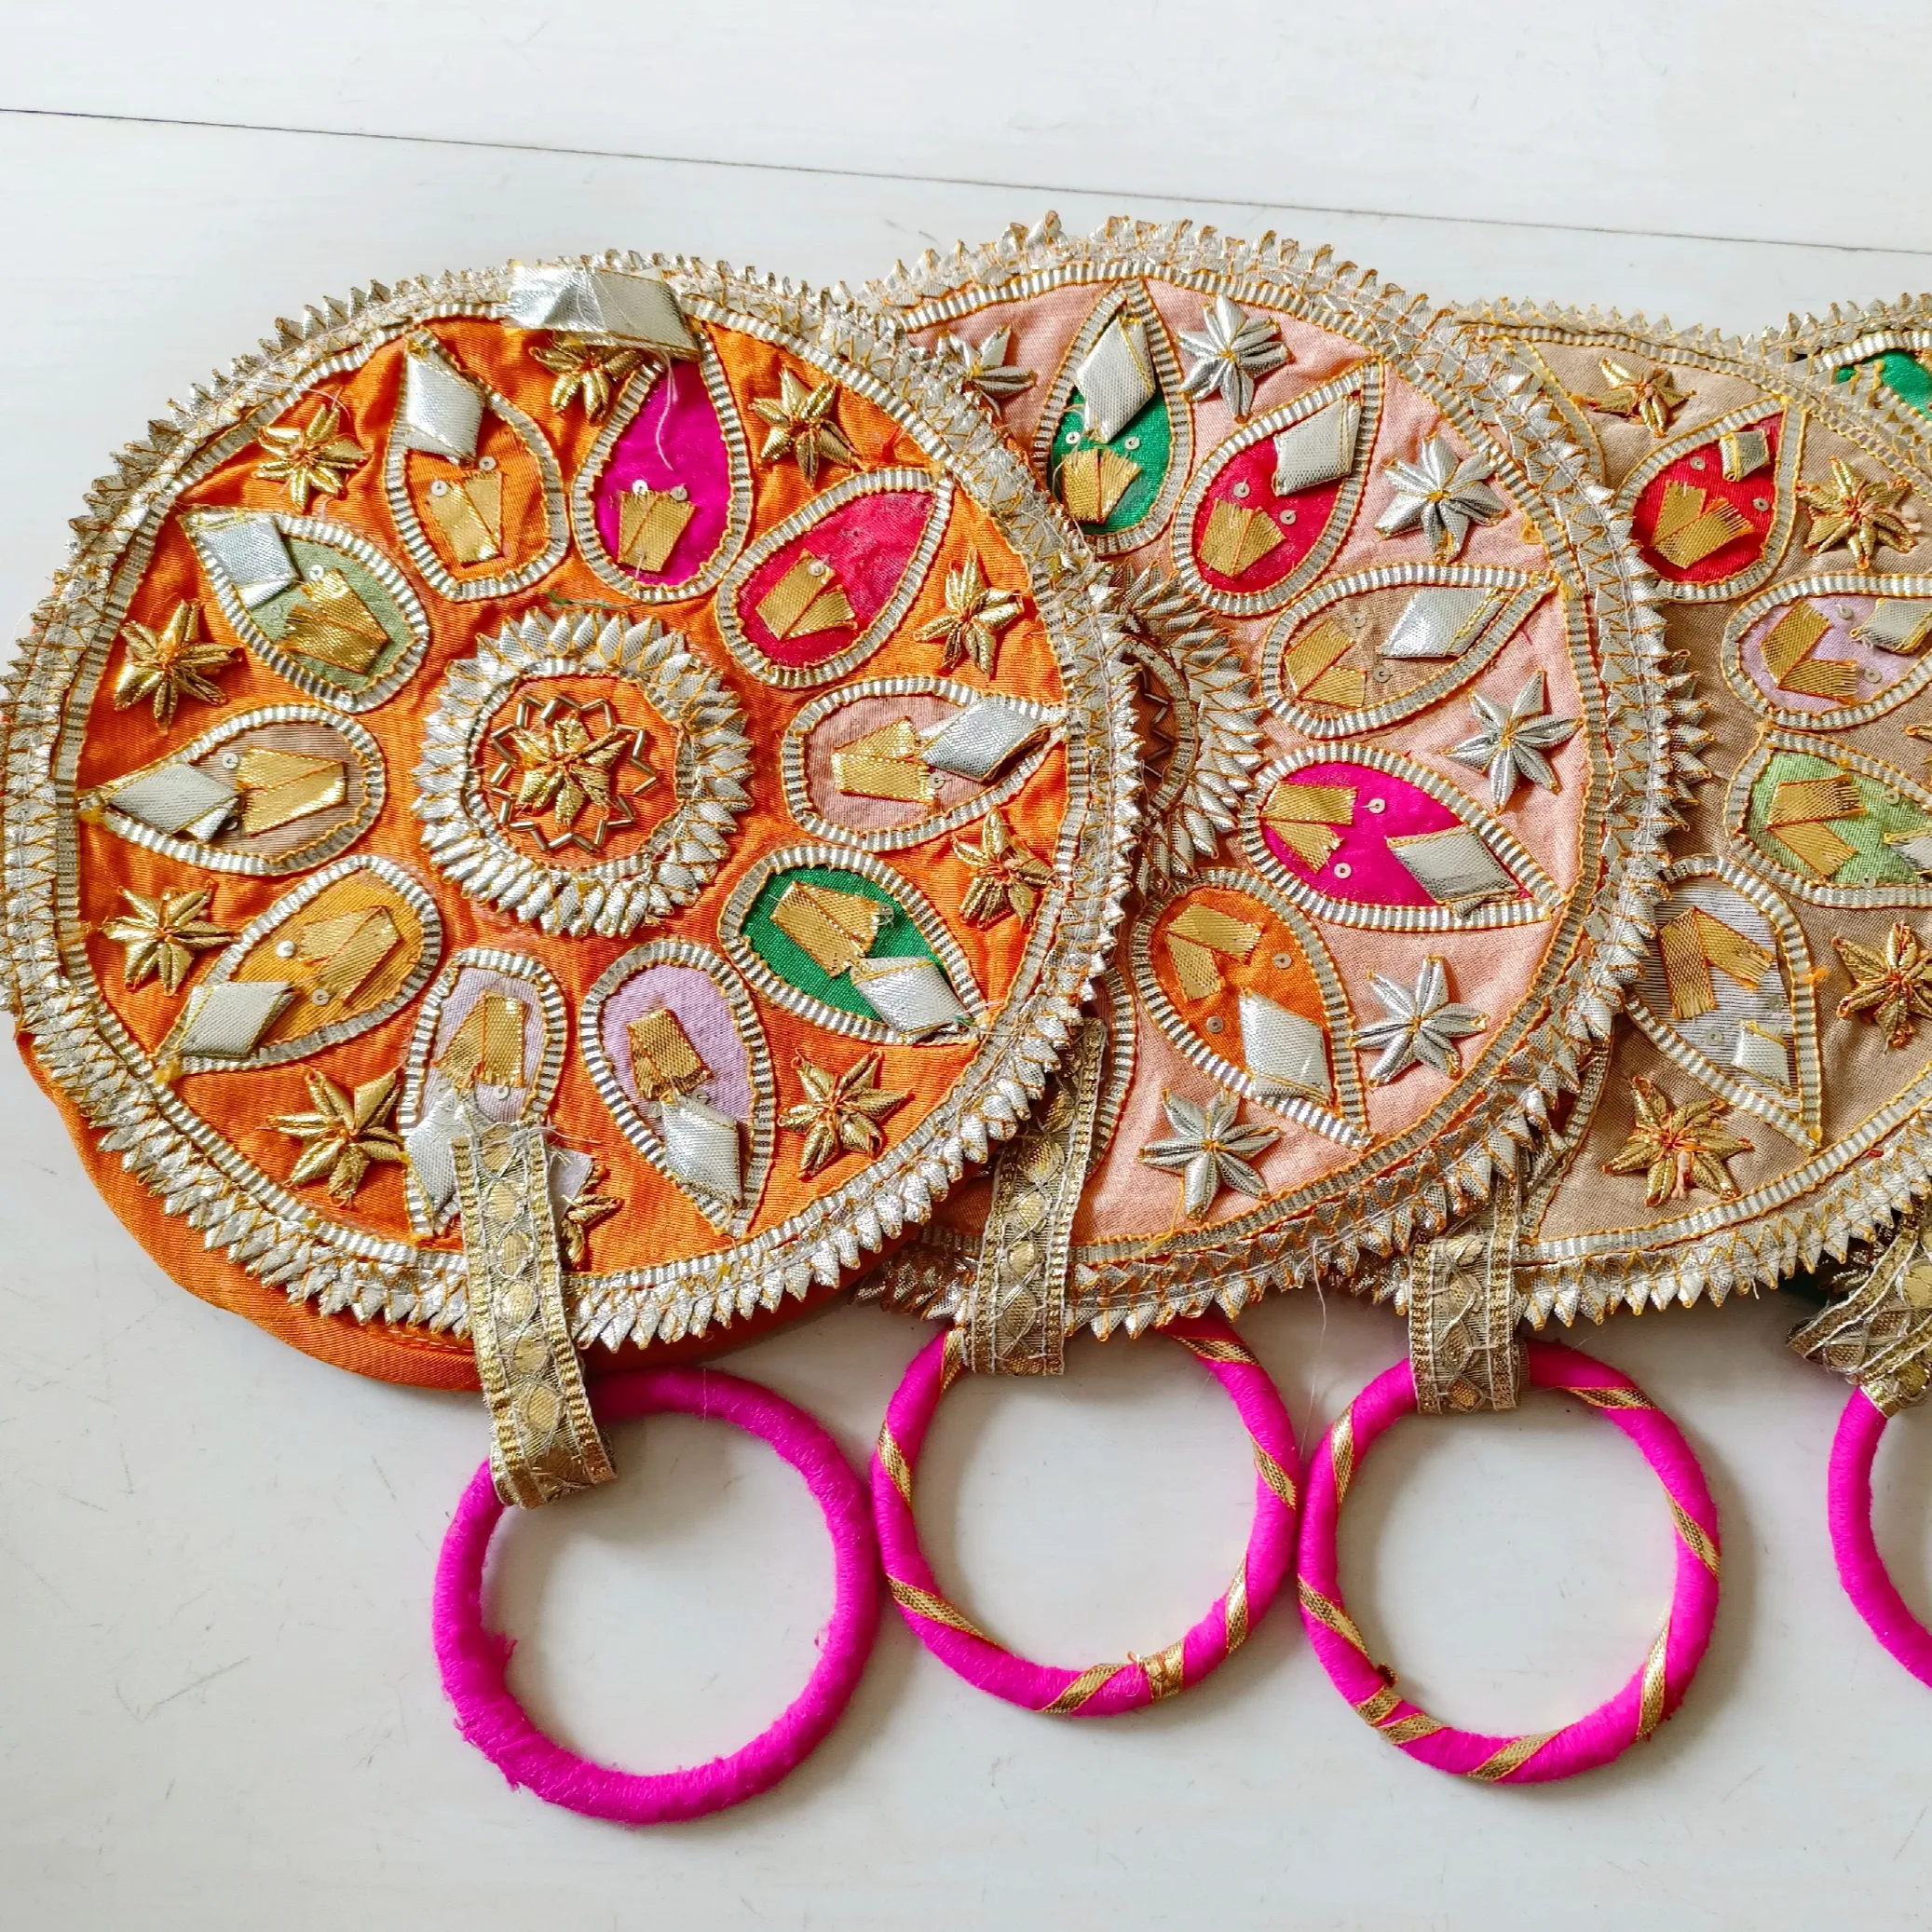 Indische handgemachte Frauen bestickte Handtasche Clutch Geldbörse Kordel zug Tasche Hochzeits bevorzugung Rückgabe geschenk für Gäste Braut taschen